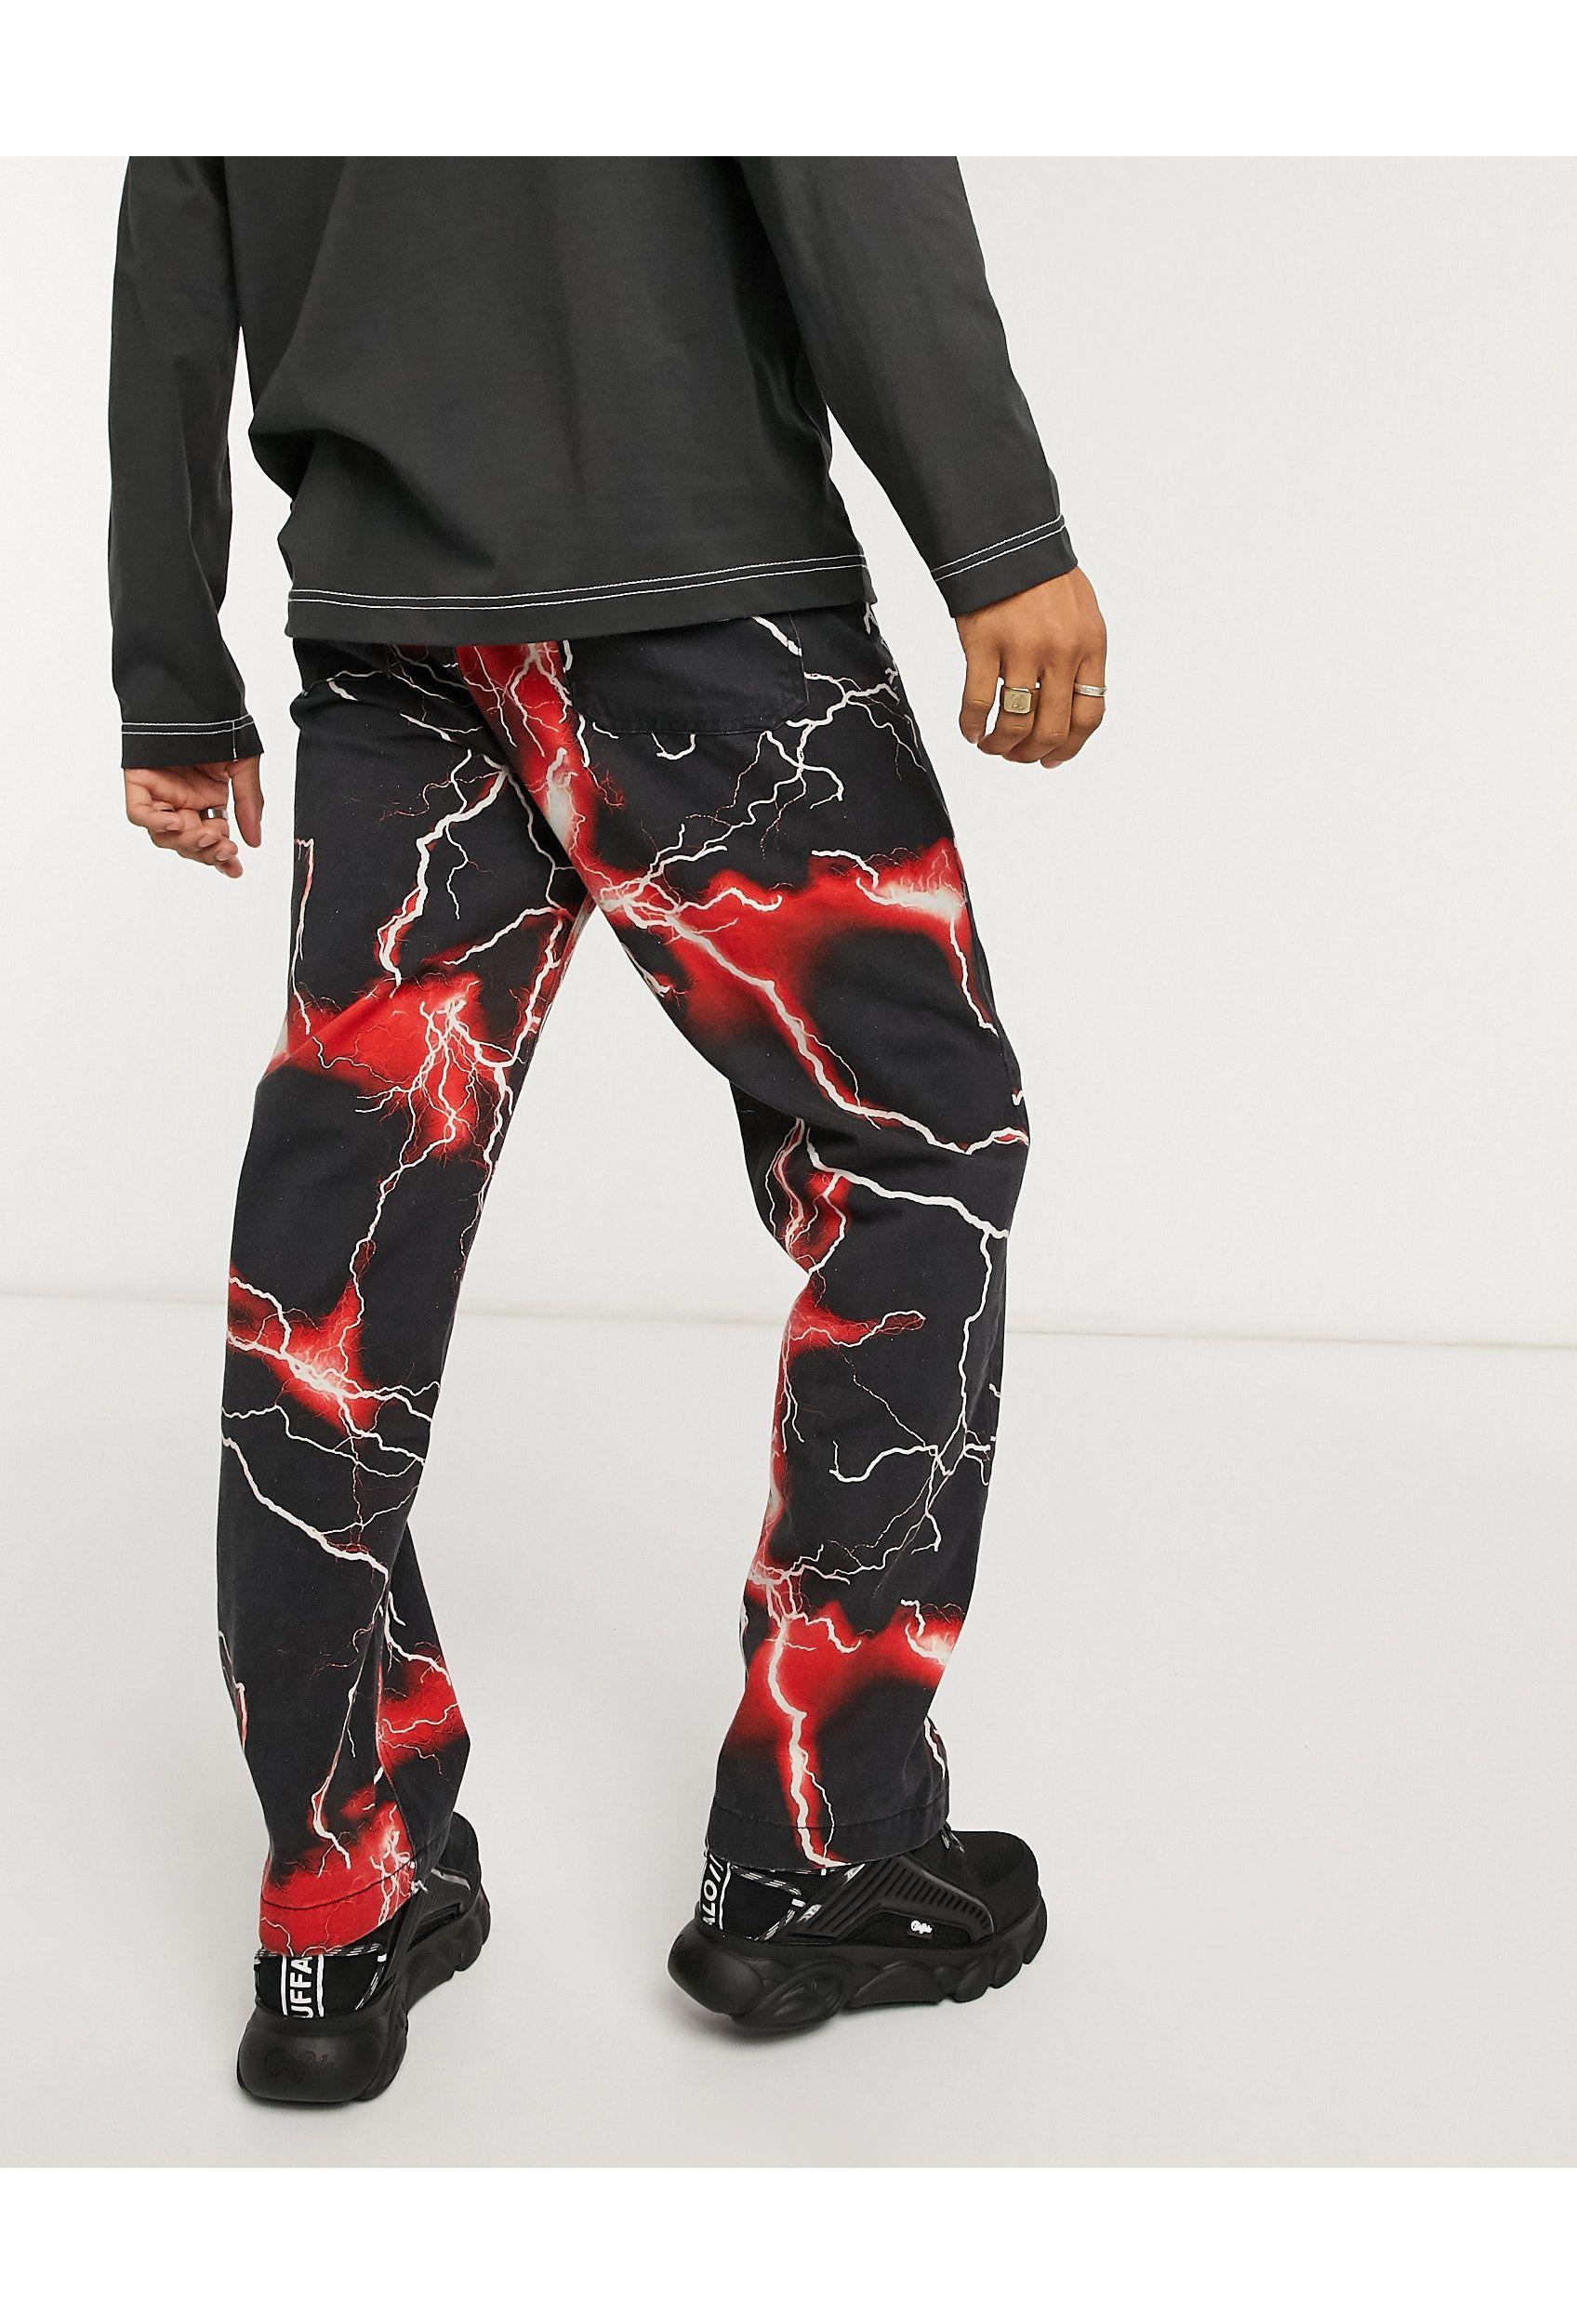 Jaded London Denim Red Lightning Skate Jeans for Men - Lyst